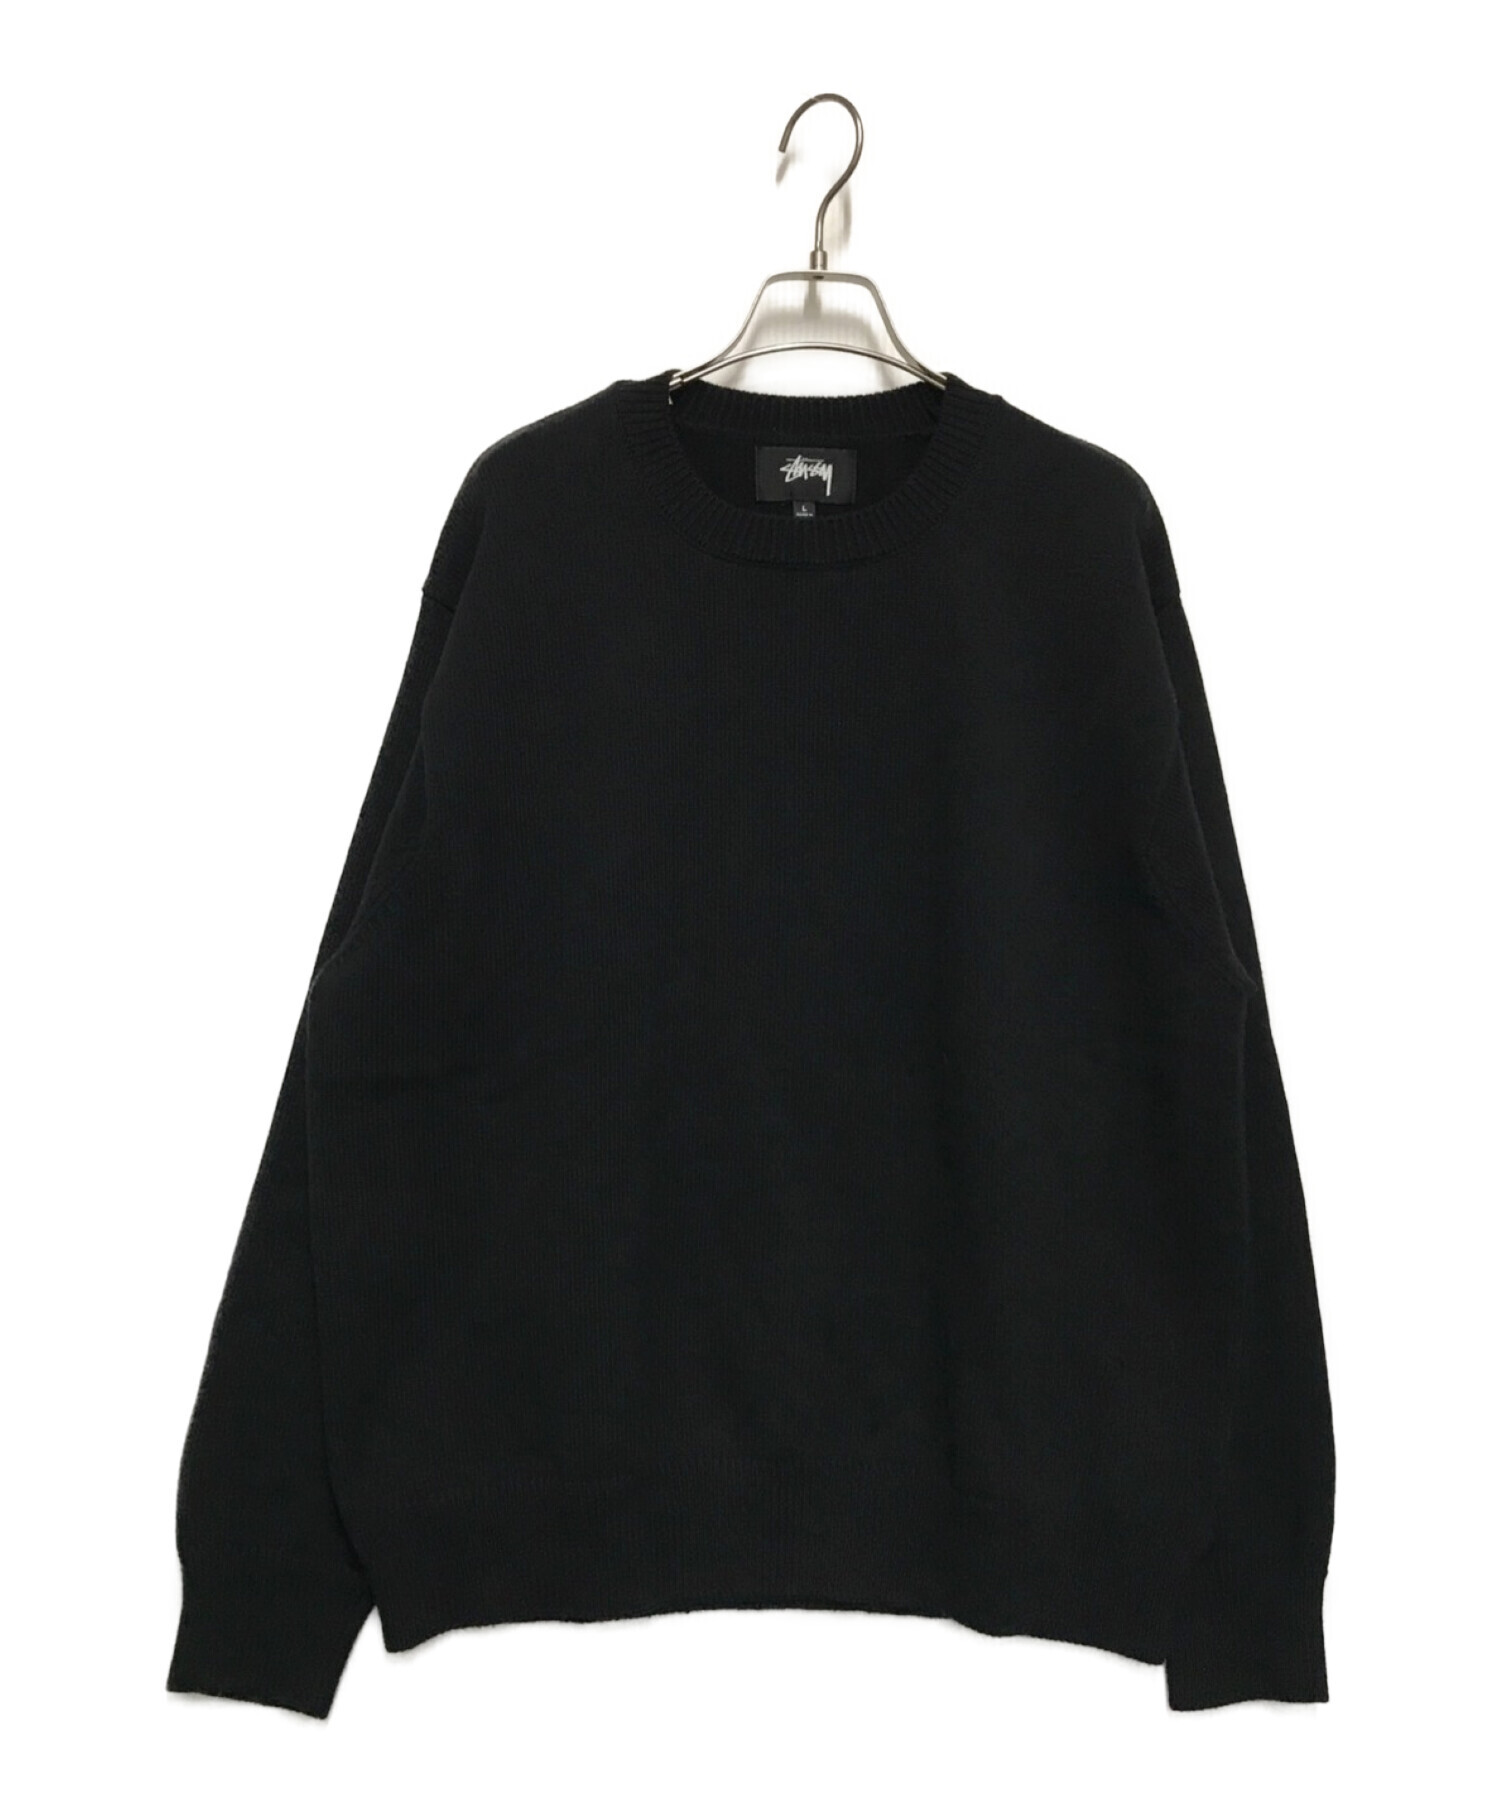 6,314円STUSSY ペントクラウン コットンニットセーター  黒色  Lサイズ